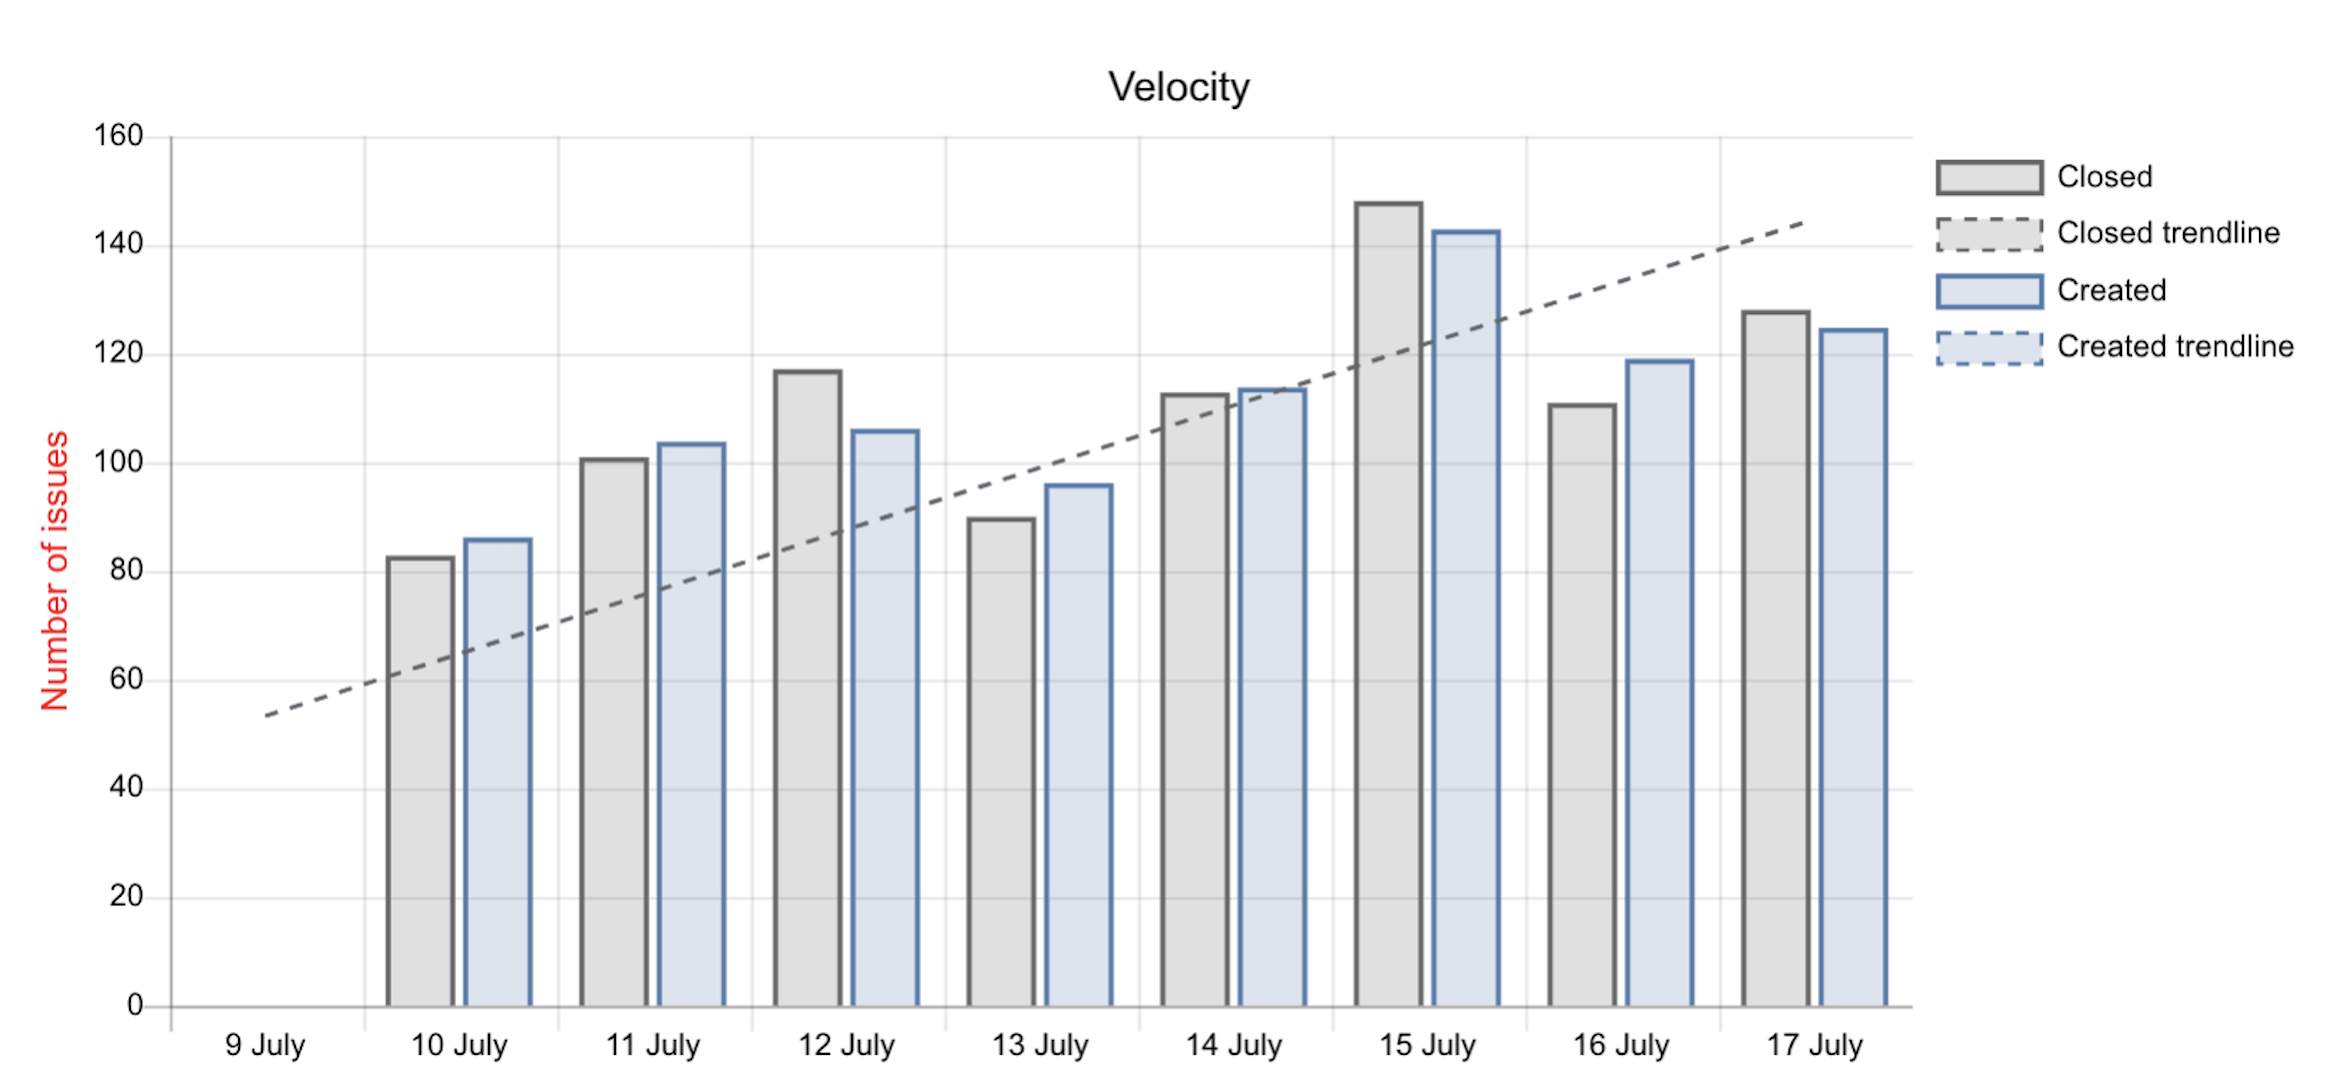 Velocity chart